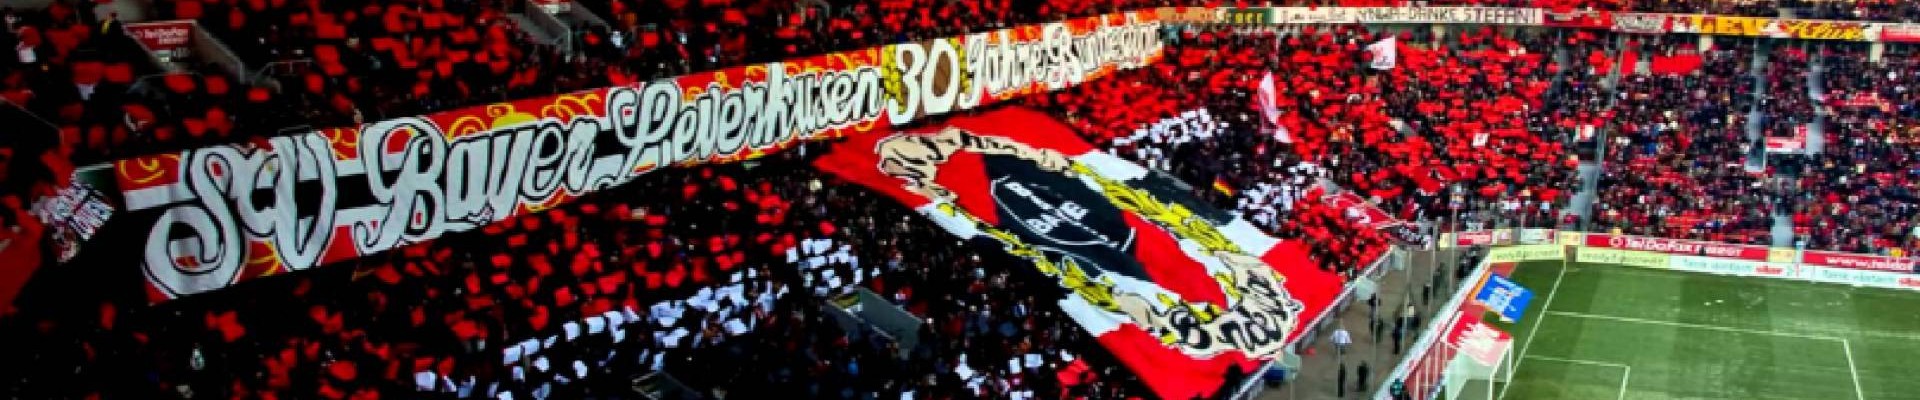 Bayer 04 Leverkusen Maç Biletleri